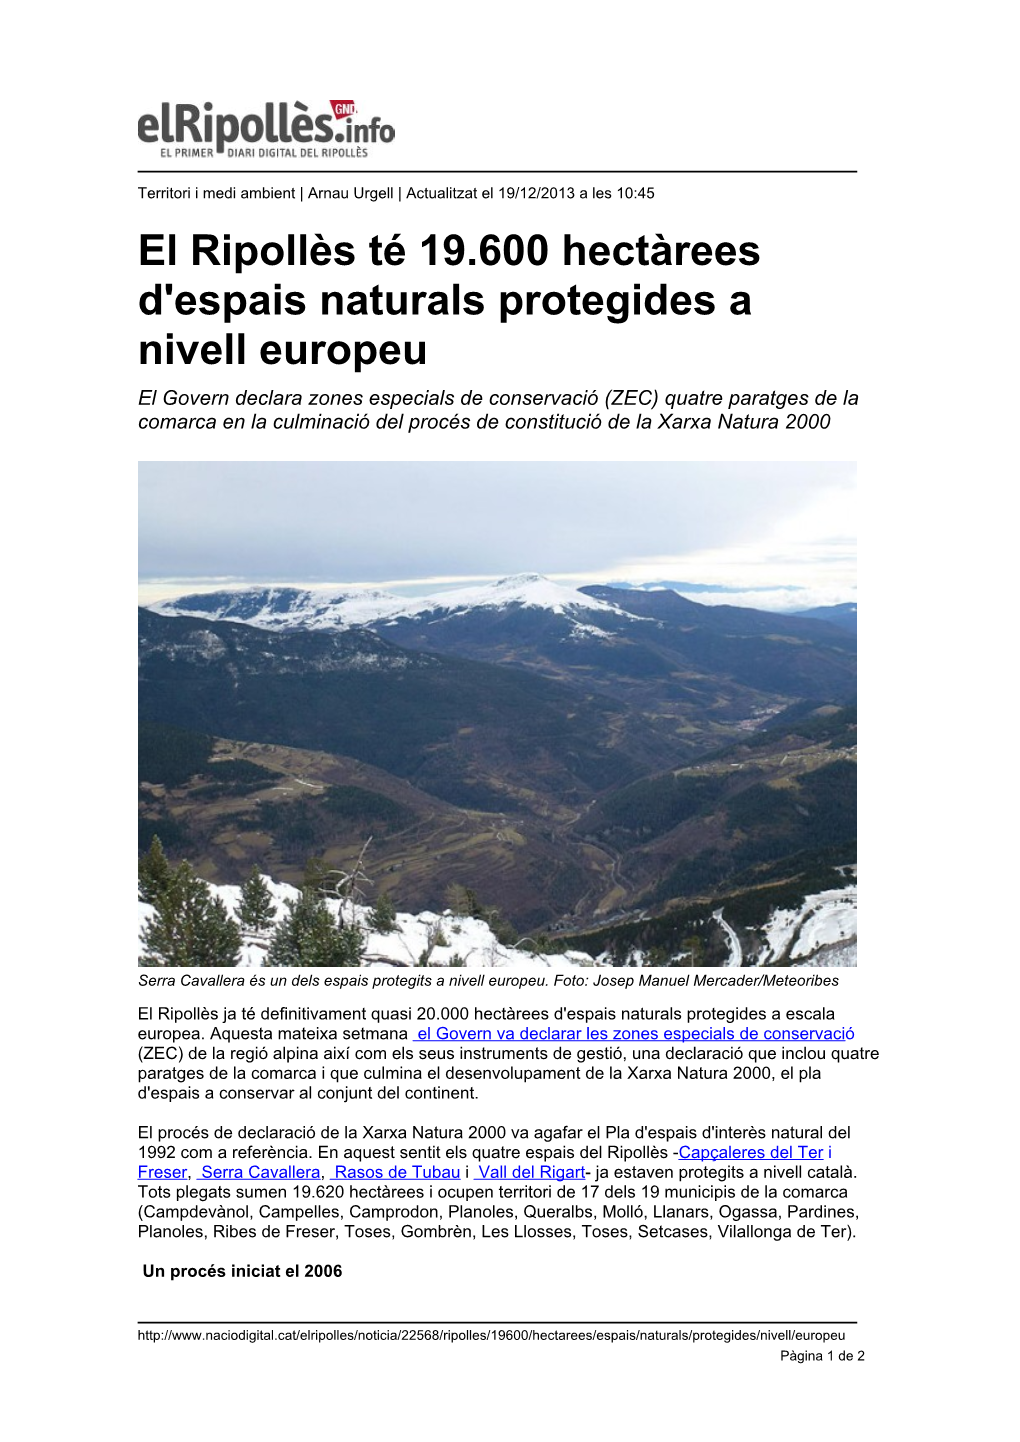 El Ripollès Té 19.600 Hectàrees D'espais Naturals